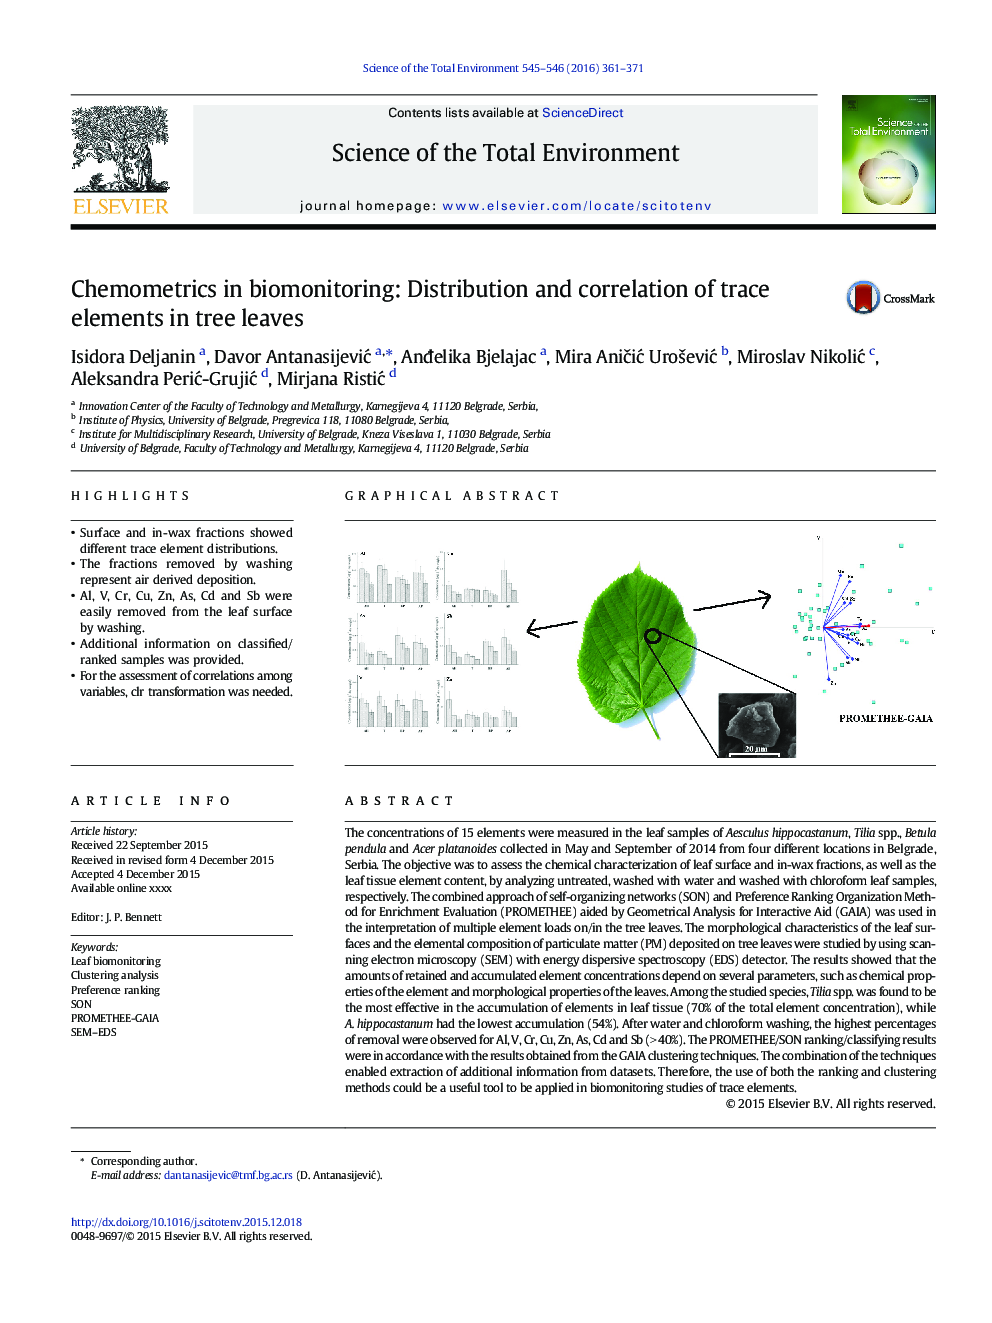 شیمی در بیومونیزاسیون: توزیع و همبستگی عناصر کمیاب در برگ های درخت 